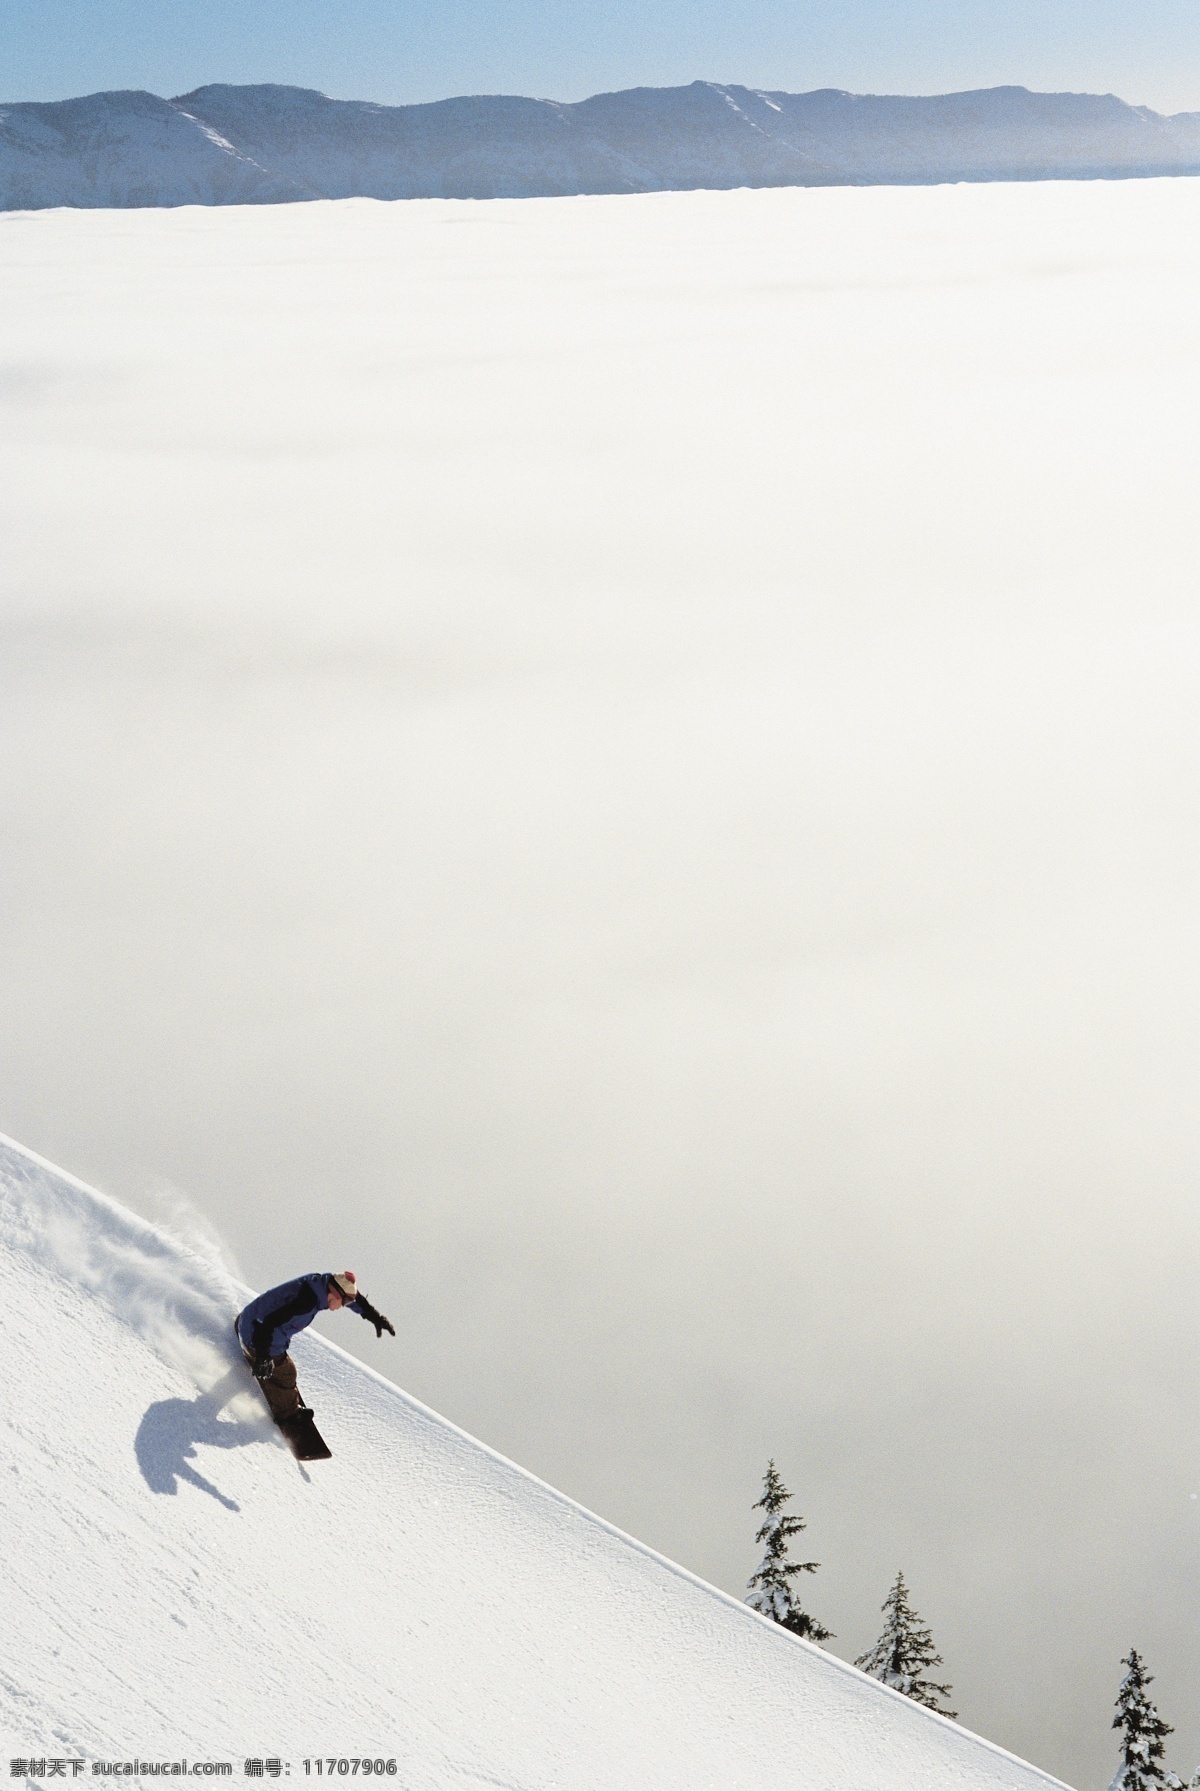 急速 而下 滑雪 人物 美丽 自然 雪地 冬季 运动 跳跃 雪山 极限运动 体育运动 斜坡 滑雪图片 生活百科